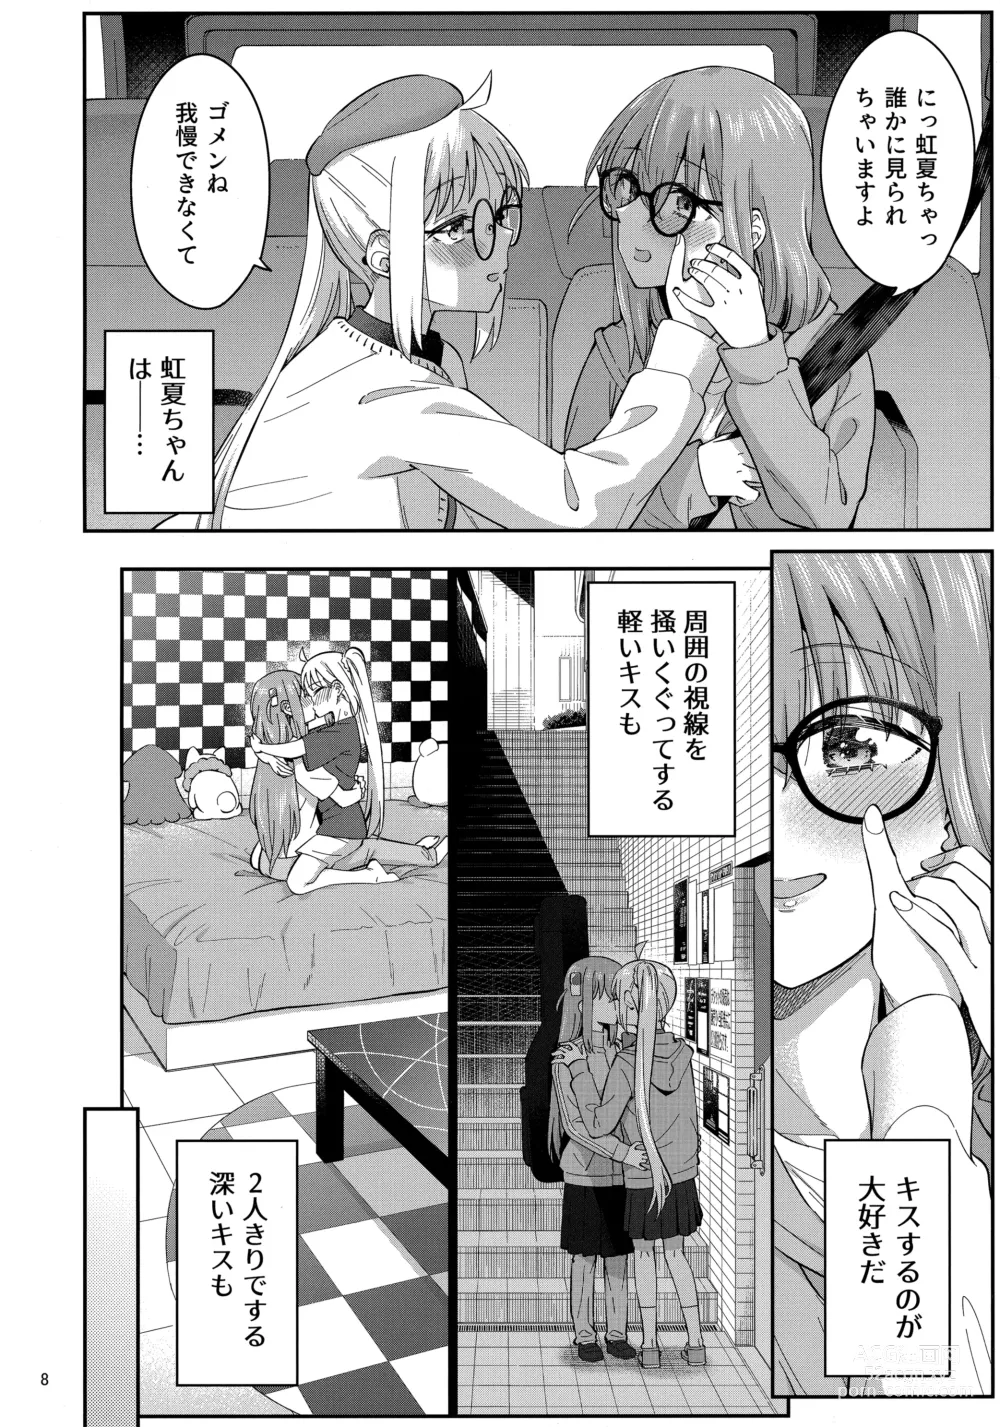 Page 7 of doujinshi Netsu o Mazete Shin o Tokashite